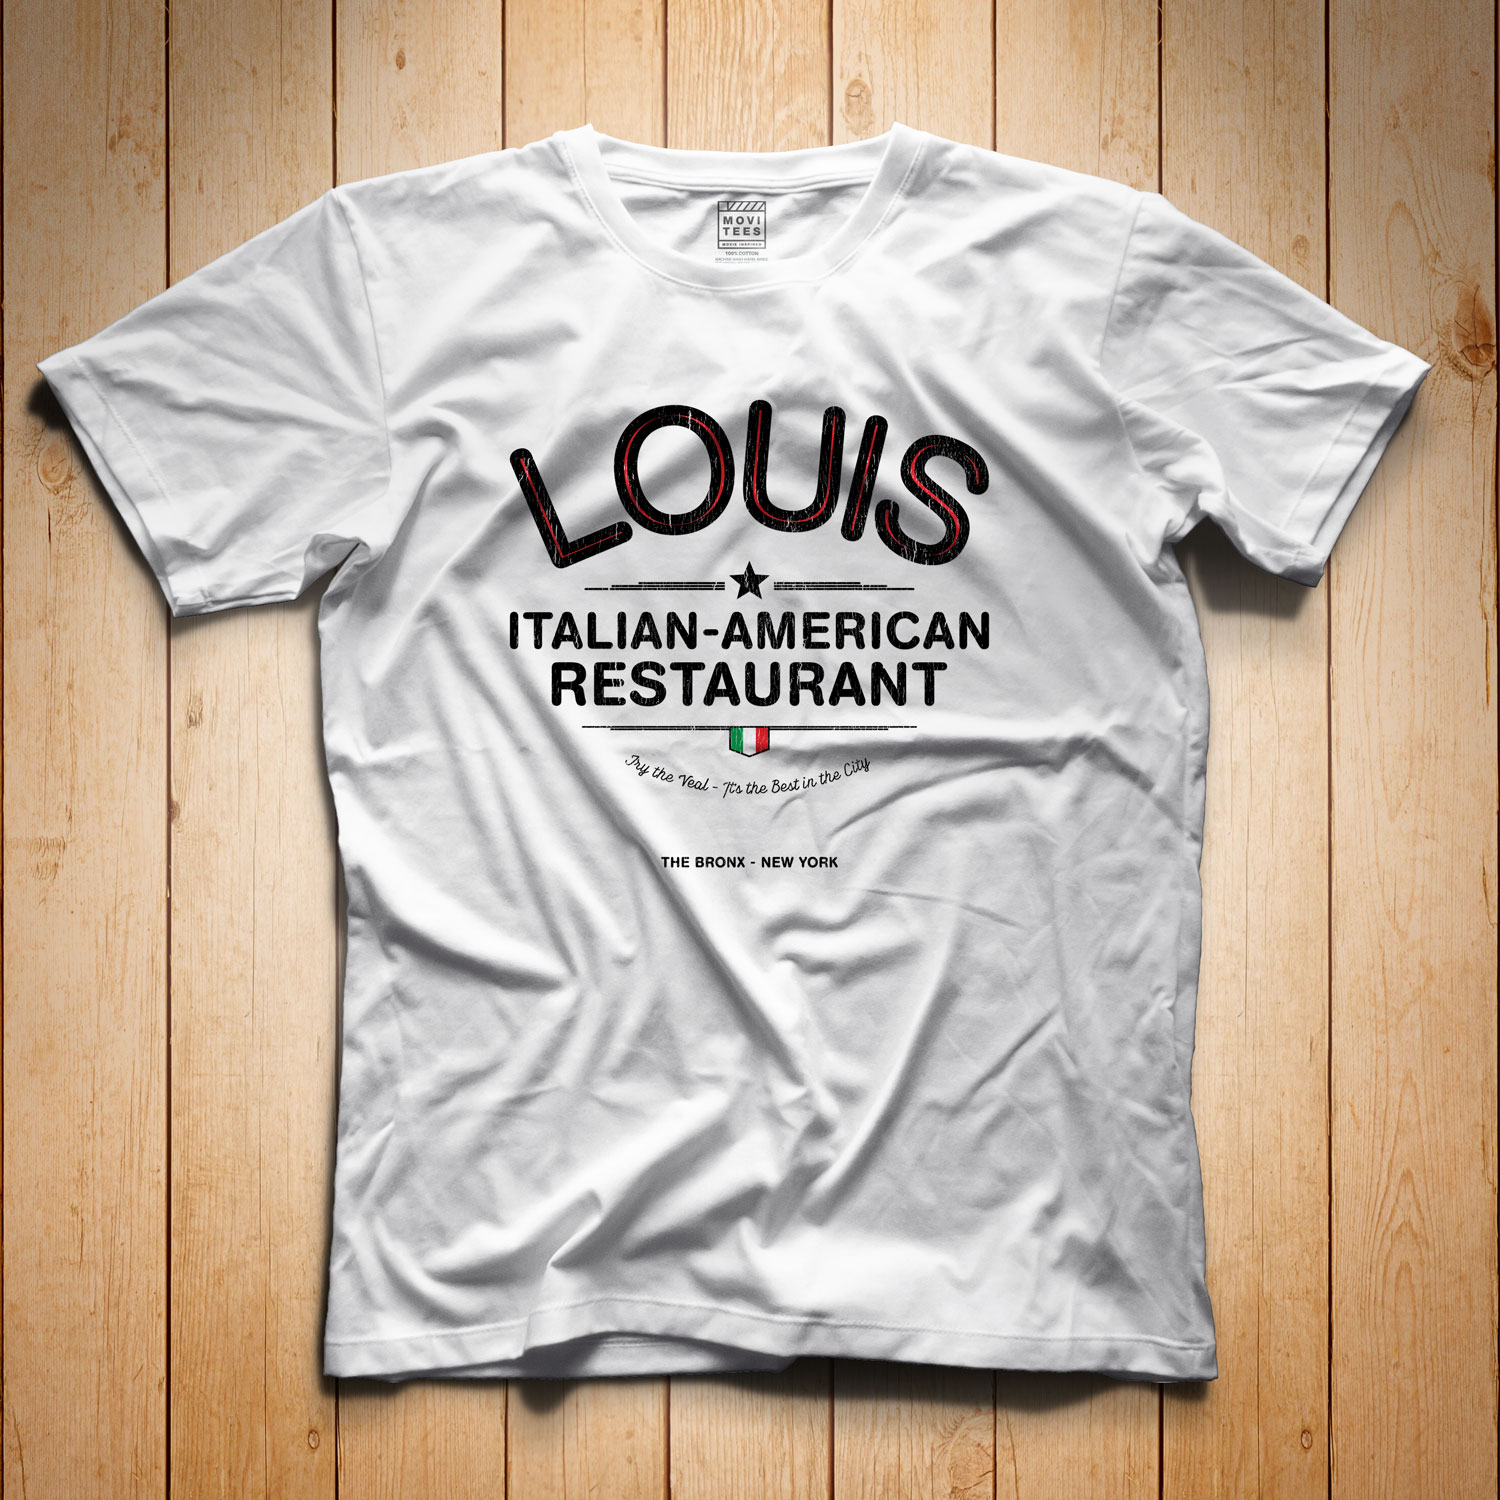 Louis Restaurant T-Shirt